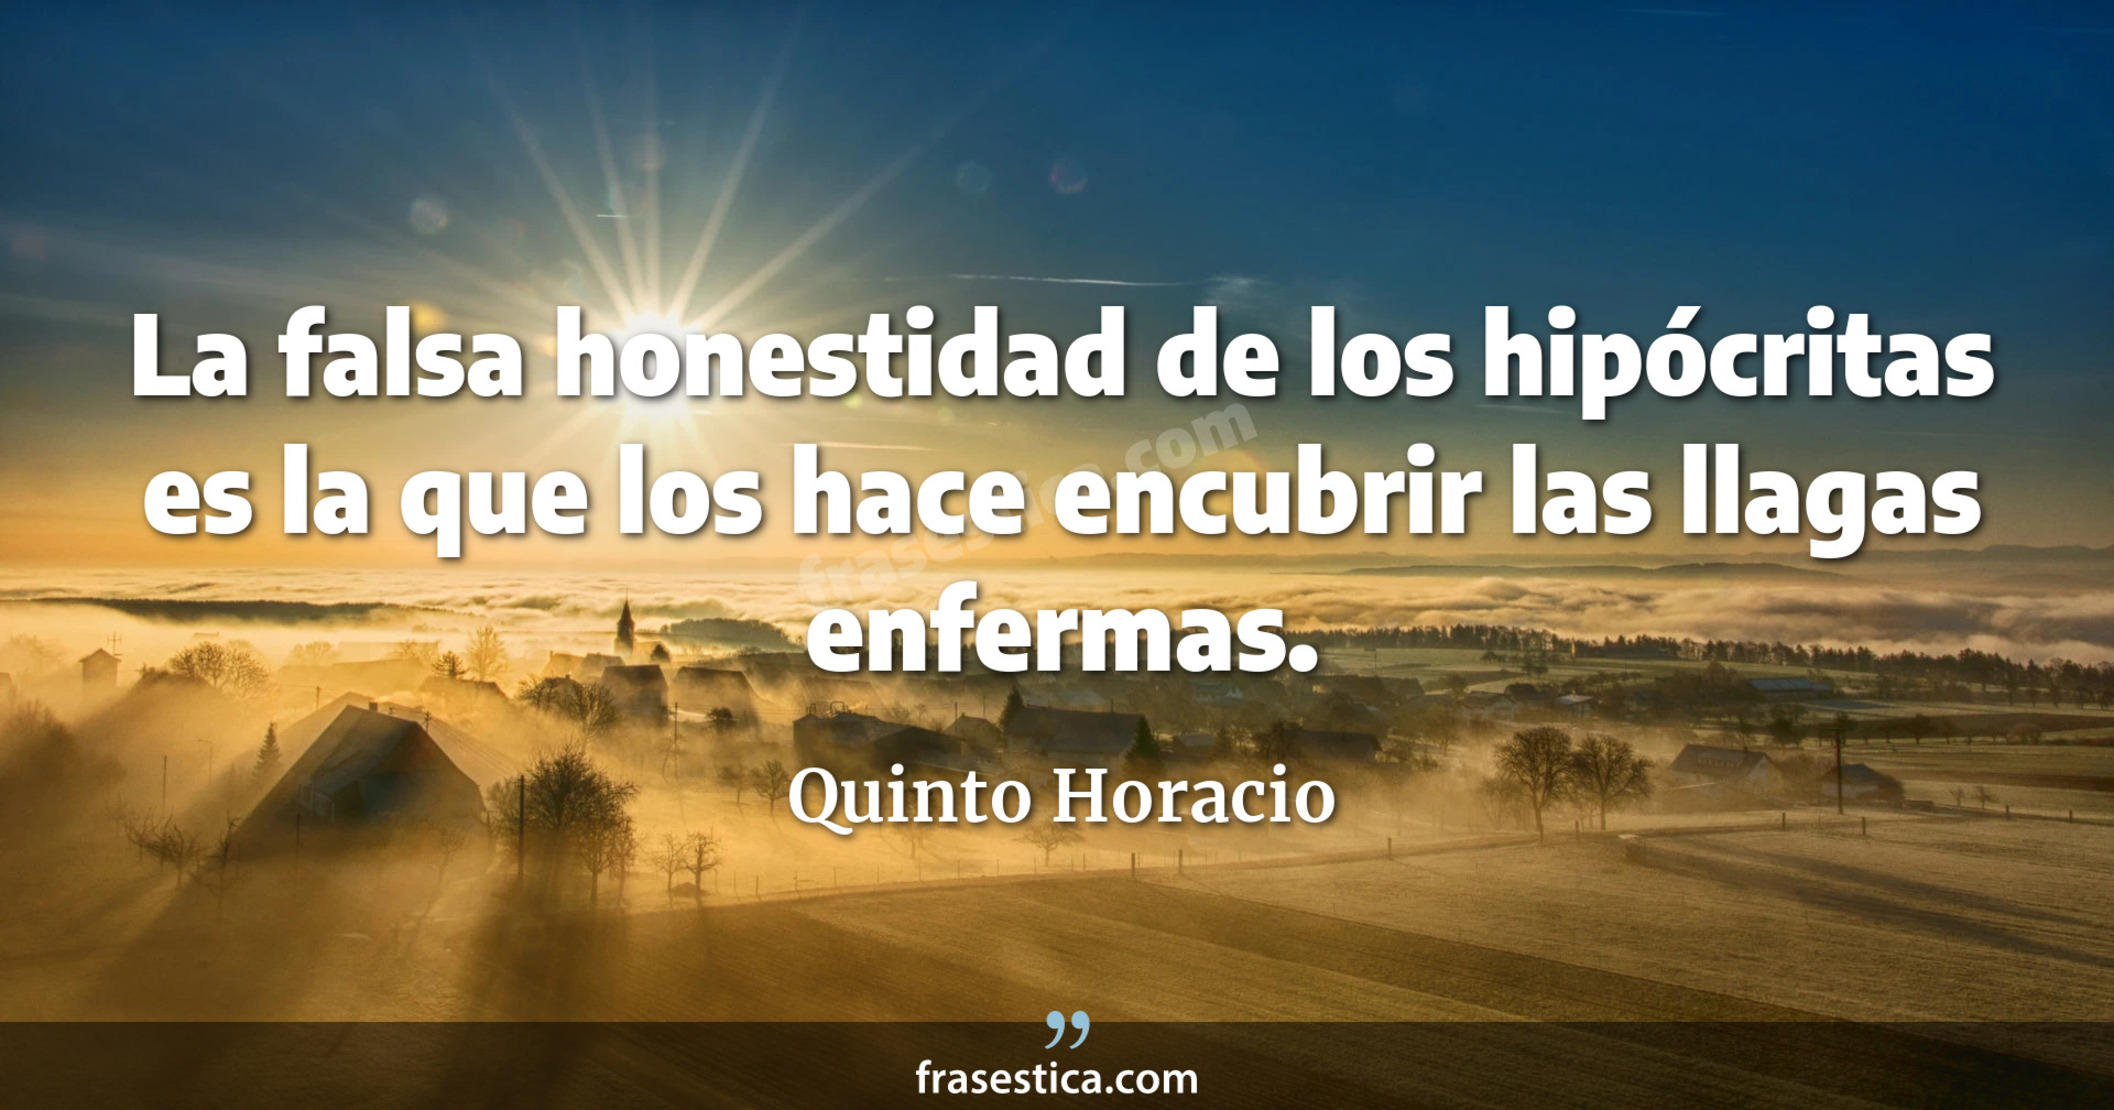 La falsa honestidad de los hipócritas es la que los hace encubrir las llagas enfermas. - Quinto Horacio